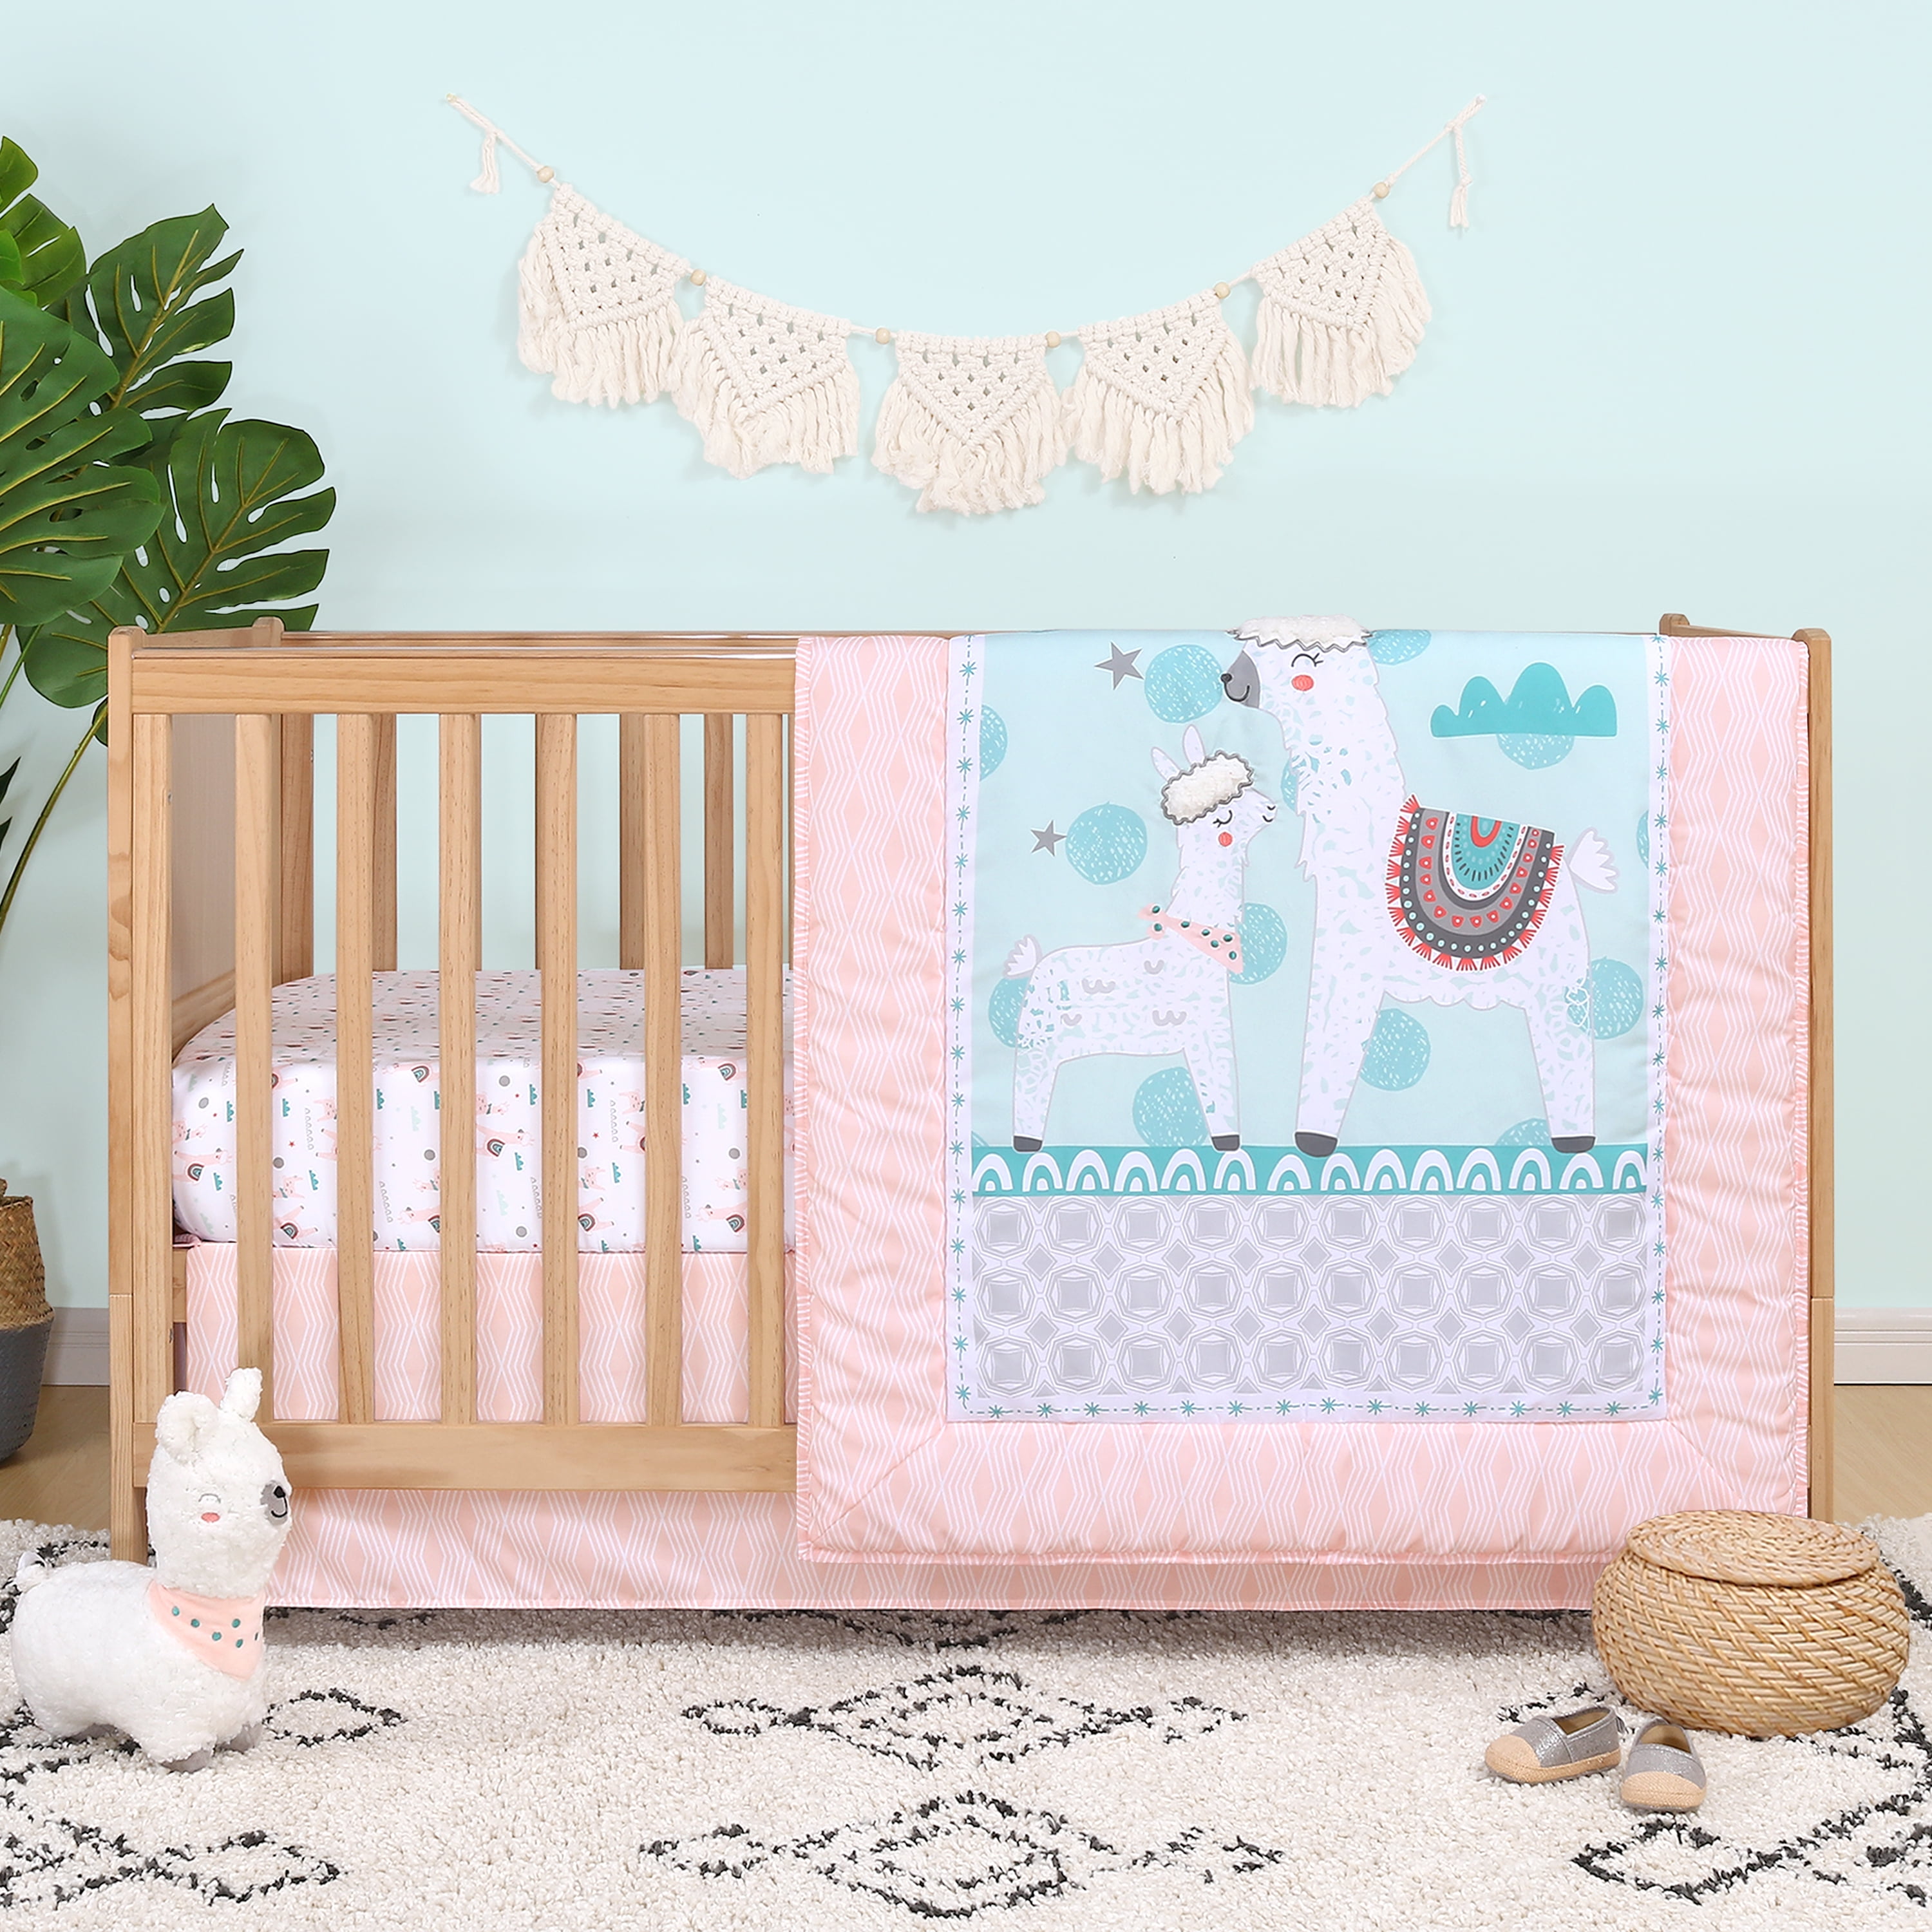 3 Piece Baby Bot Crib Bedding Set Girls Pink